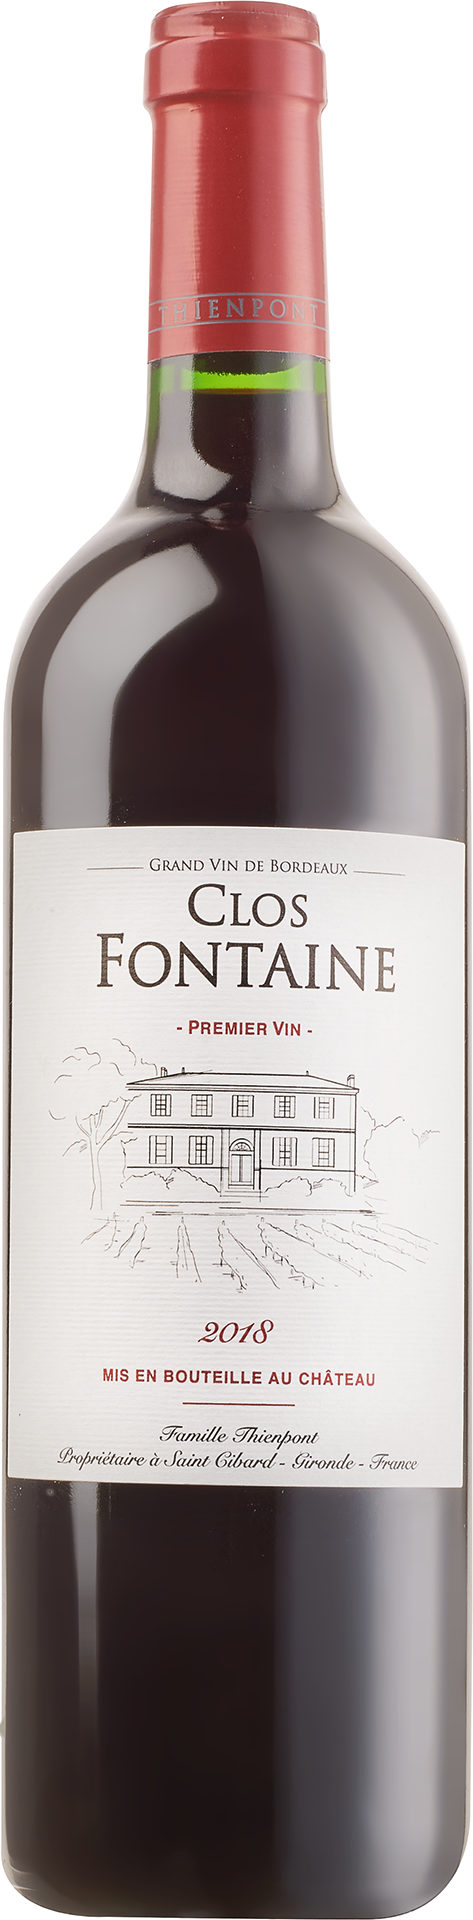 Clos Fontaine »Premier Vin« 